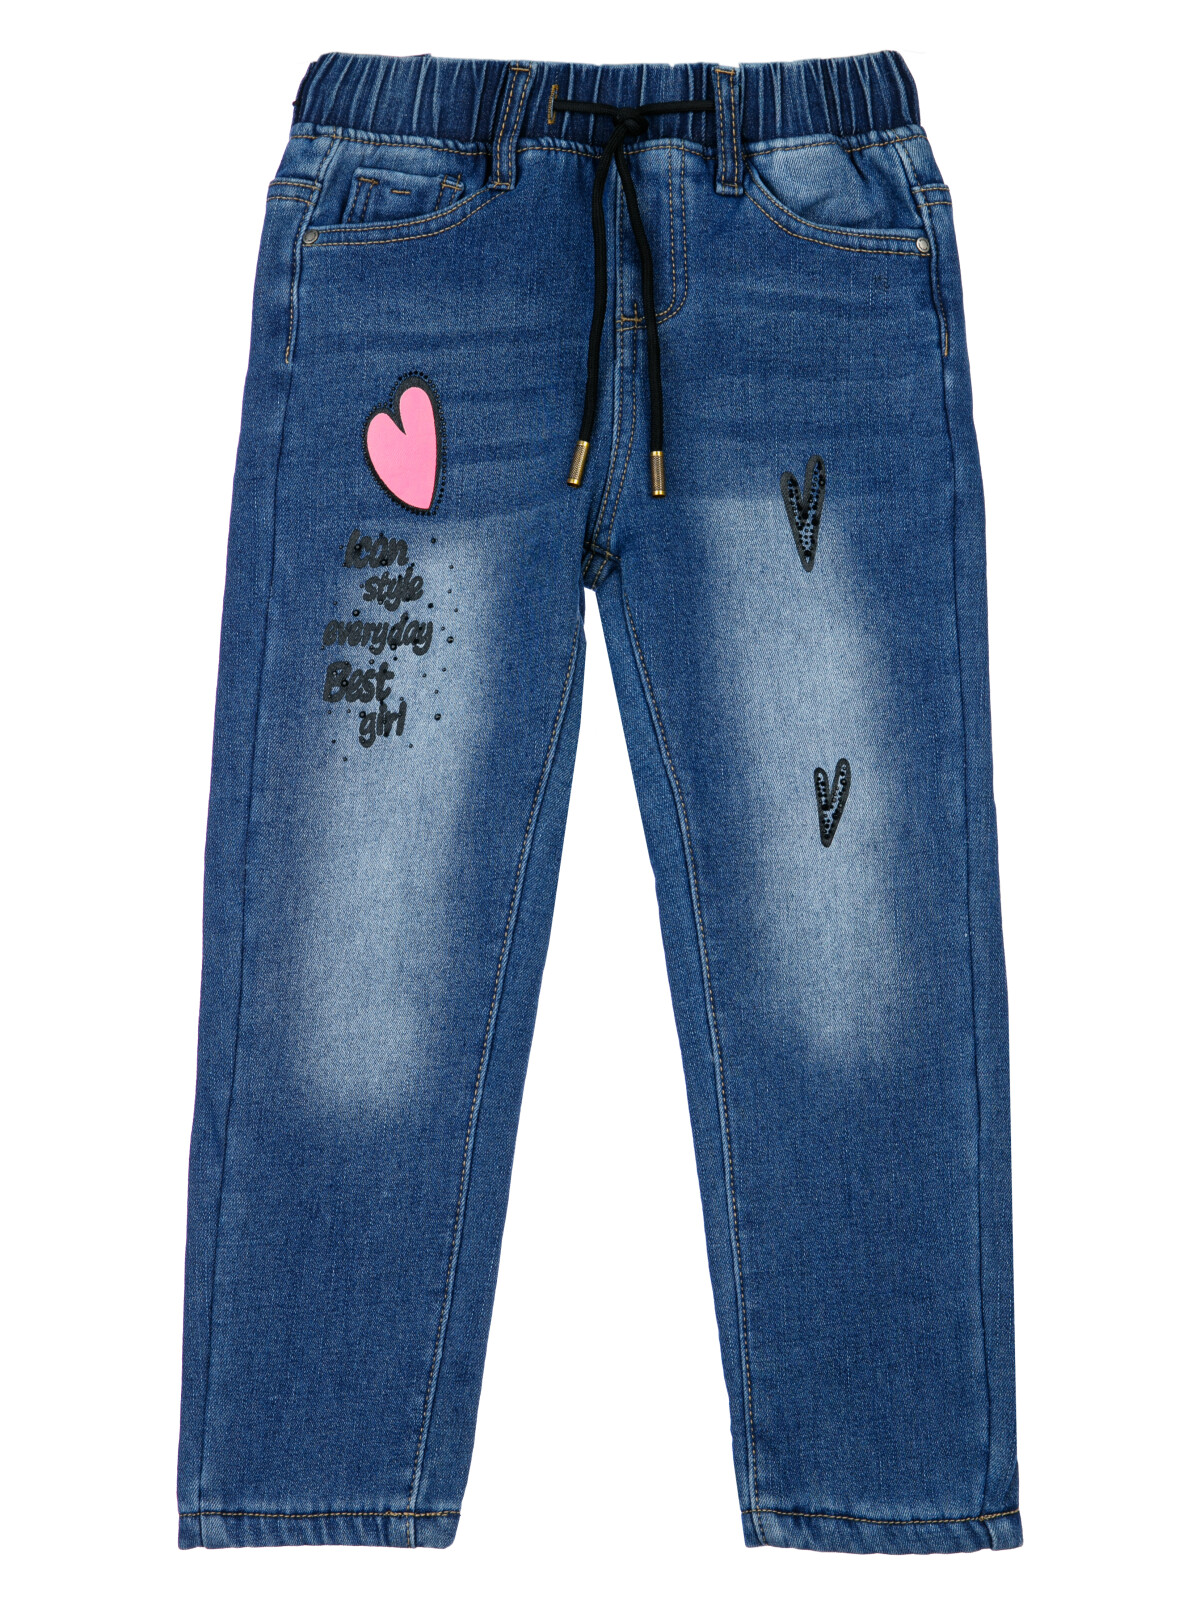 Брюки текстильные джинсовые утепленные флисом для девочек PlayToday, тёмно-синий, 116